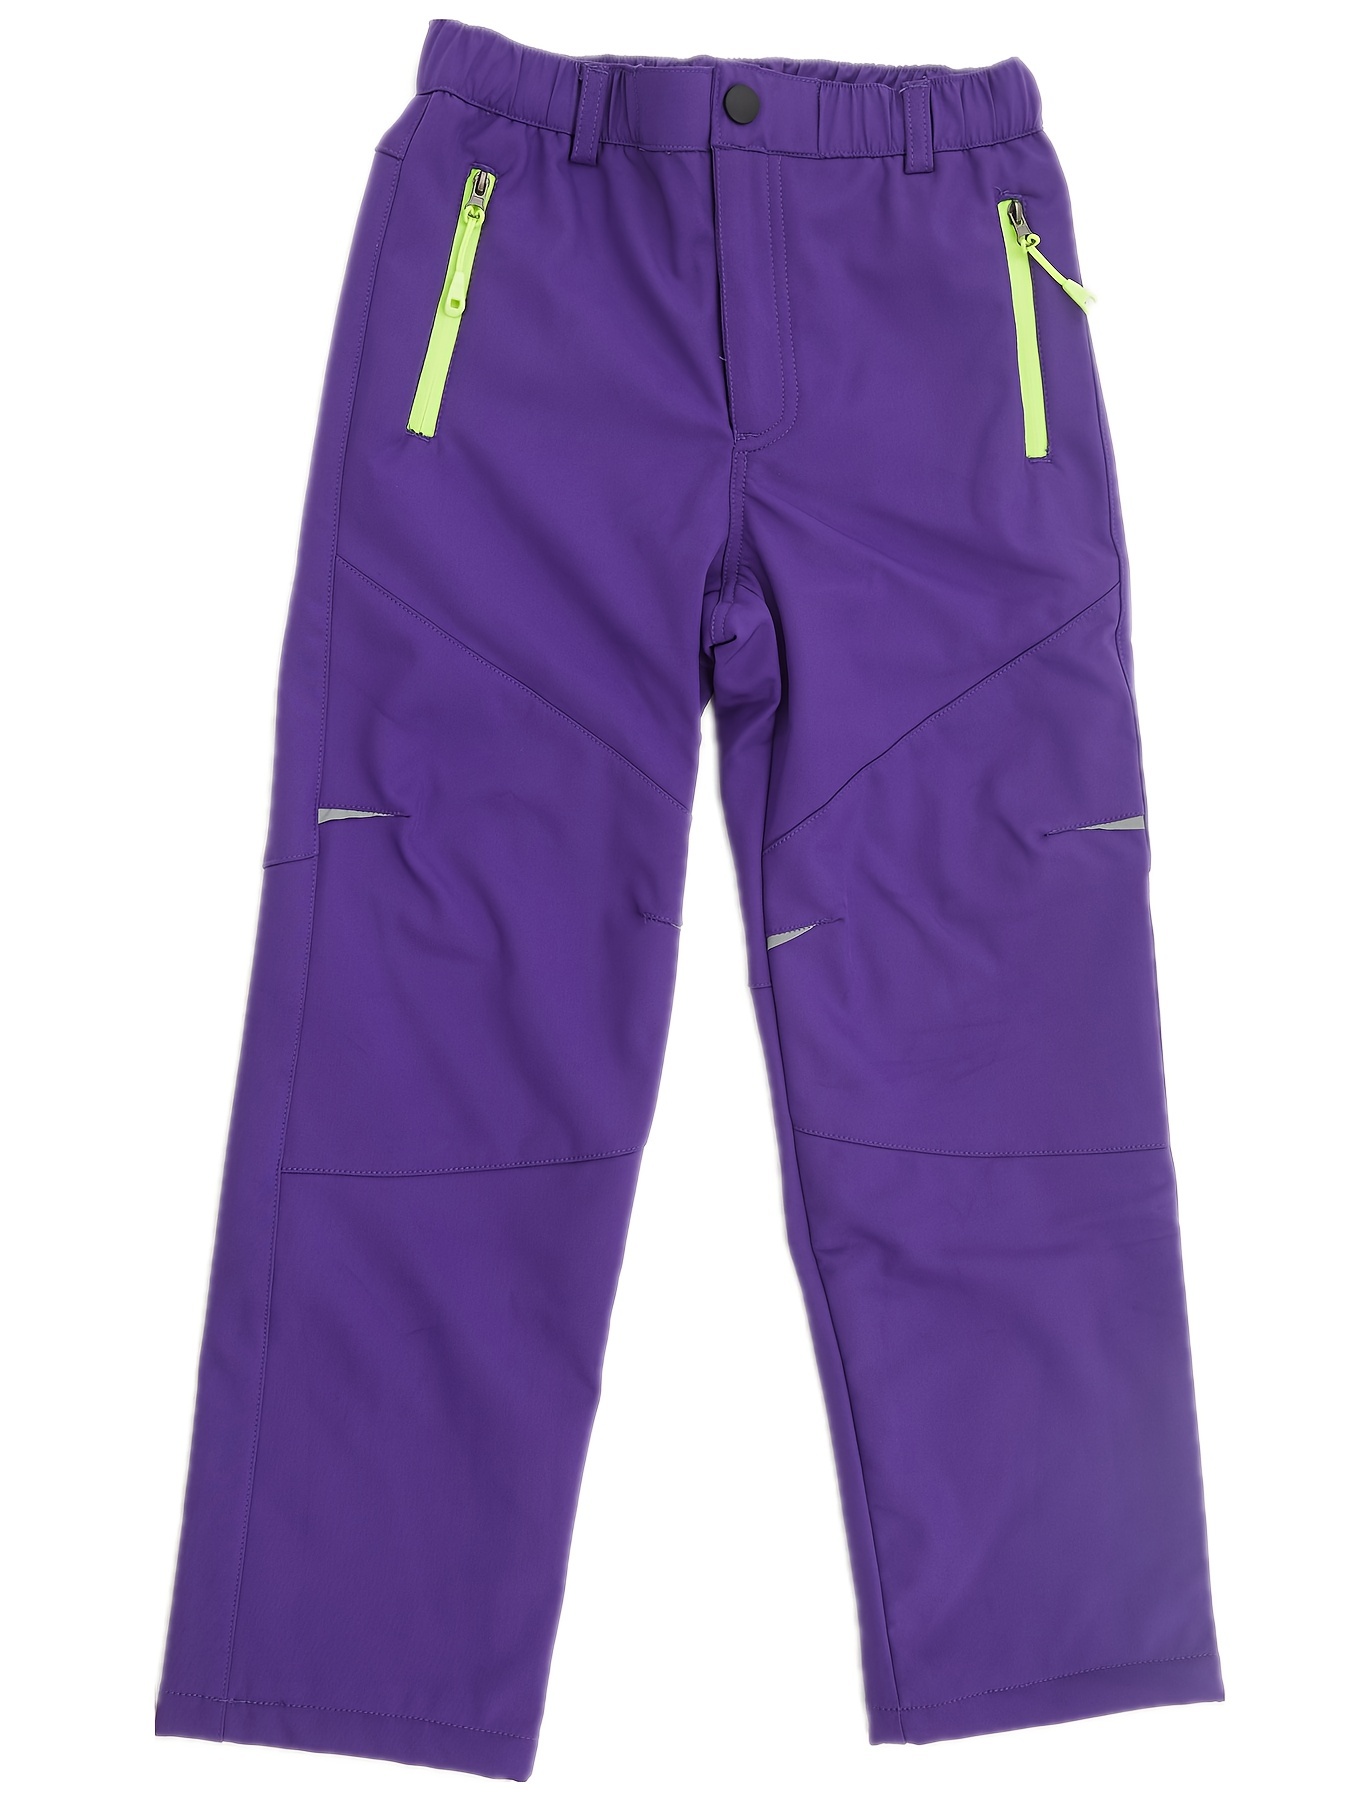 Women Ski Pants Waterproof Softshell Polar Fleece Winter Russian Snow Pants  Windproof Snowboard Warm Trousers Pants Color: Purple, Size: XL